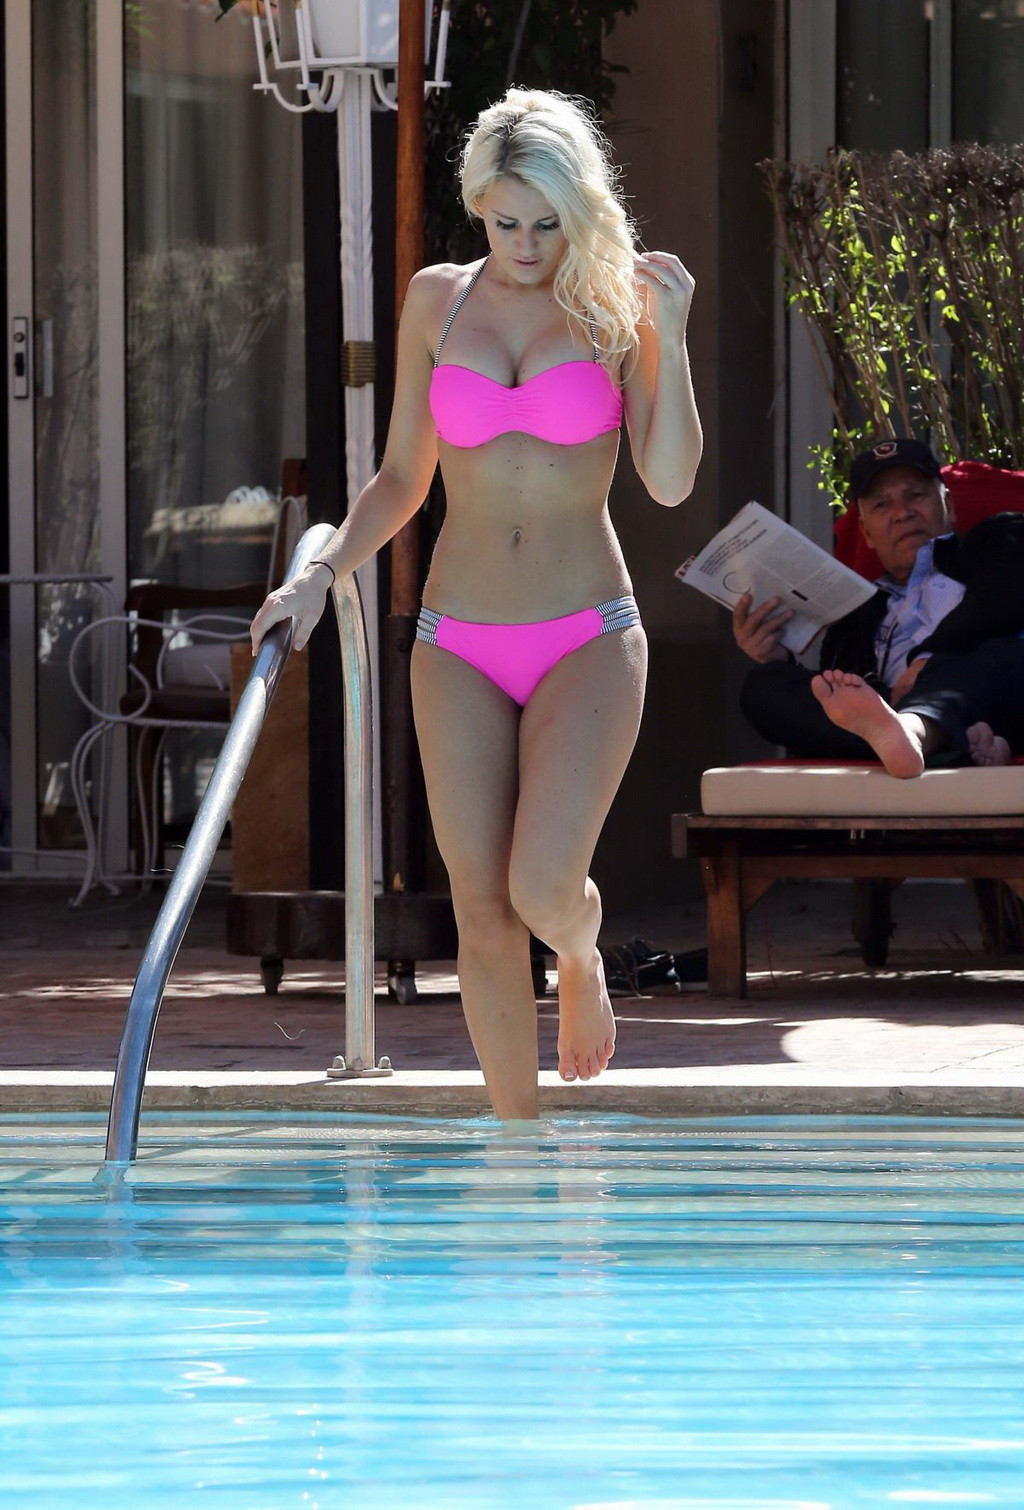 Danielle armstrong montre son corps bien dessiné dans un minuscule bikini rose.
 #75198571